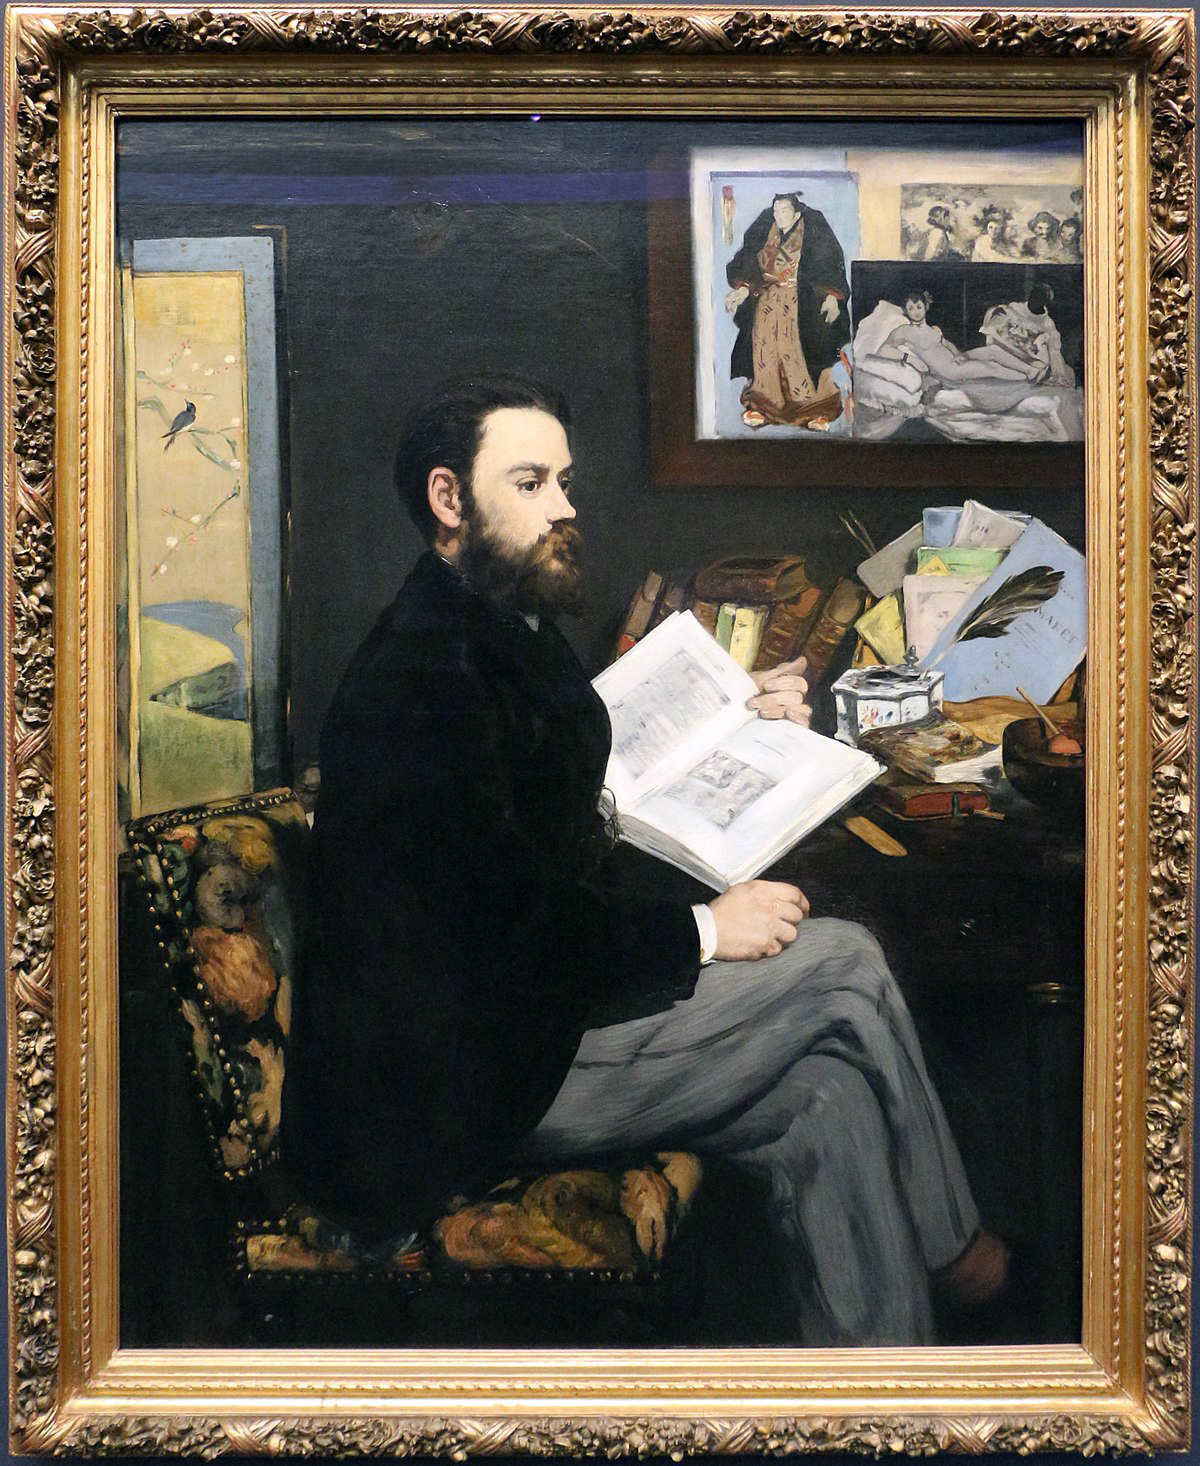 Édouard Manet, Émile Zola, 1868, oil on canvas, 57 x 45 inches or 146.5 x 114 cm (Musée d'Orsay, Paris)